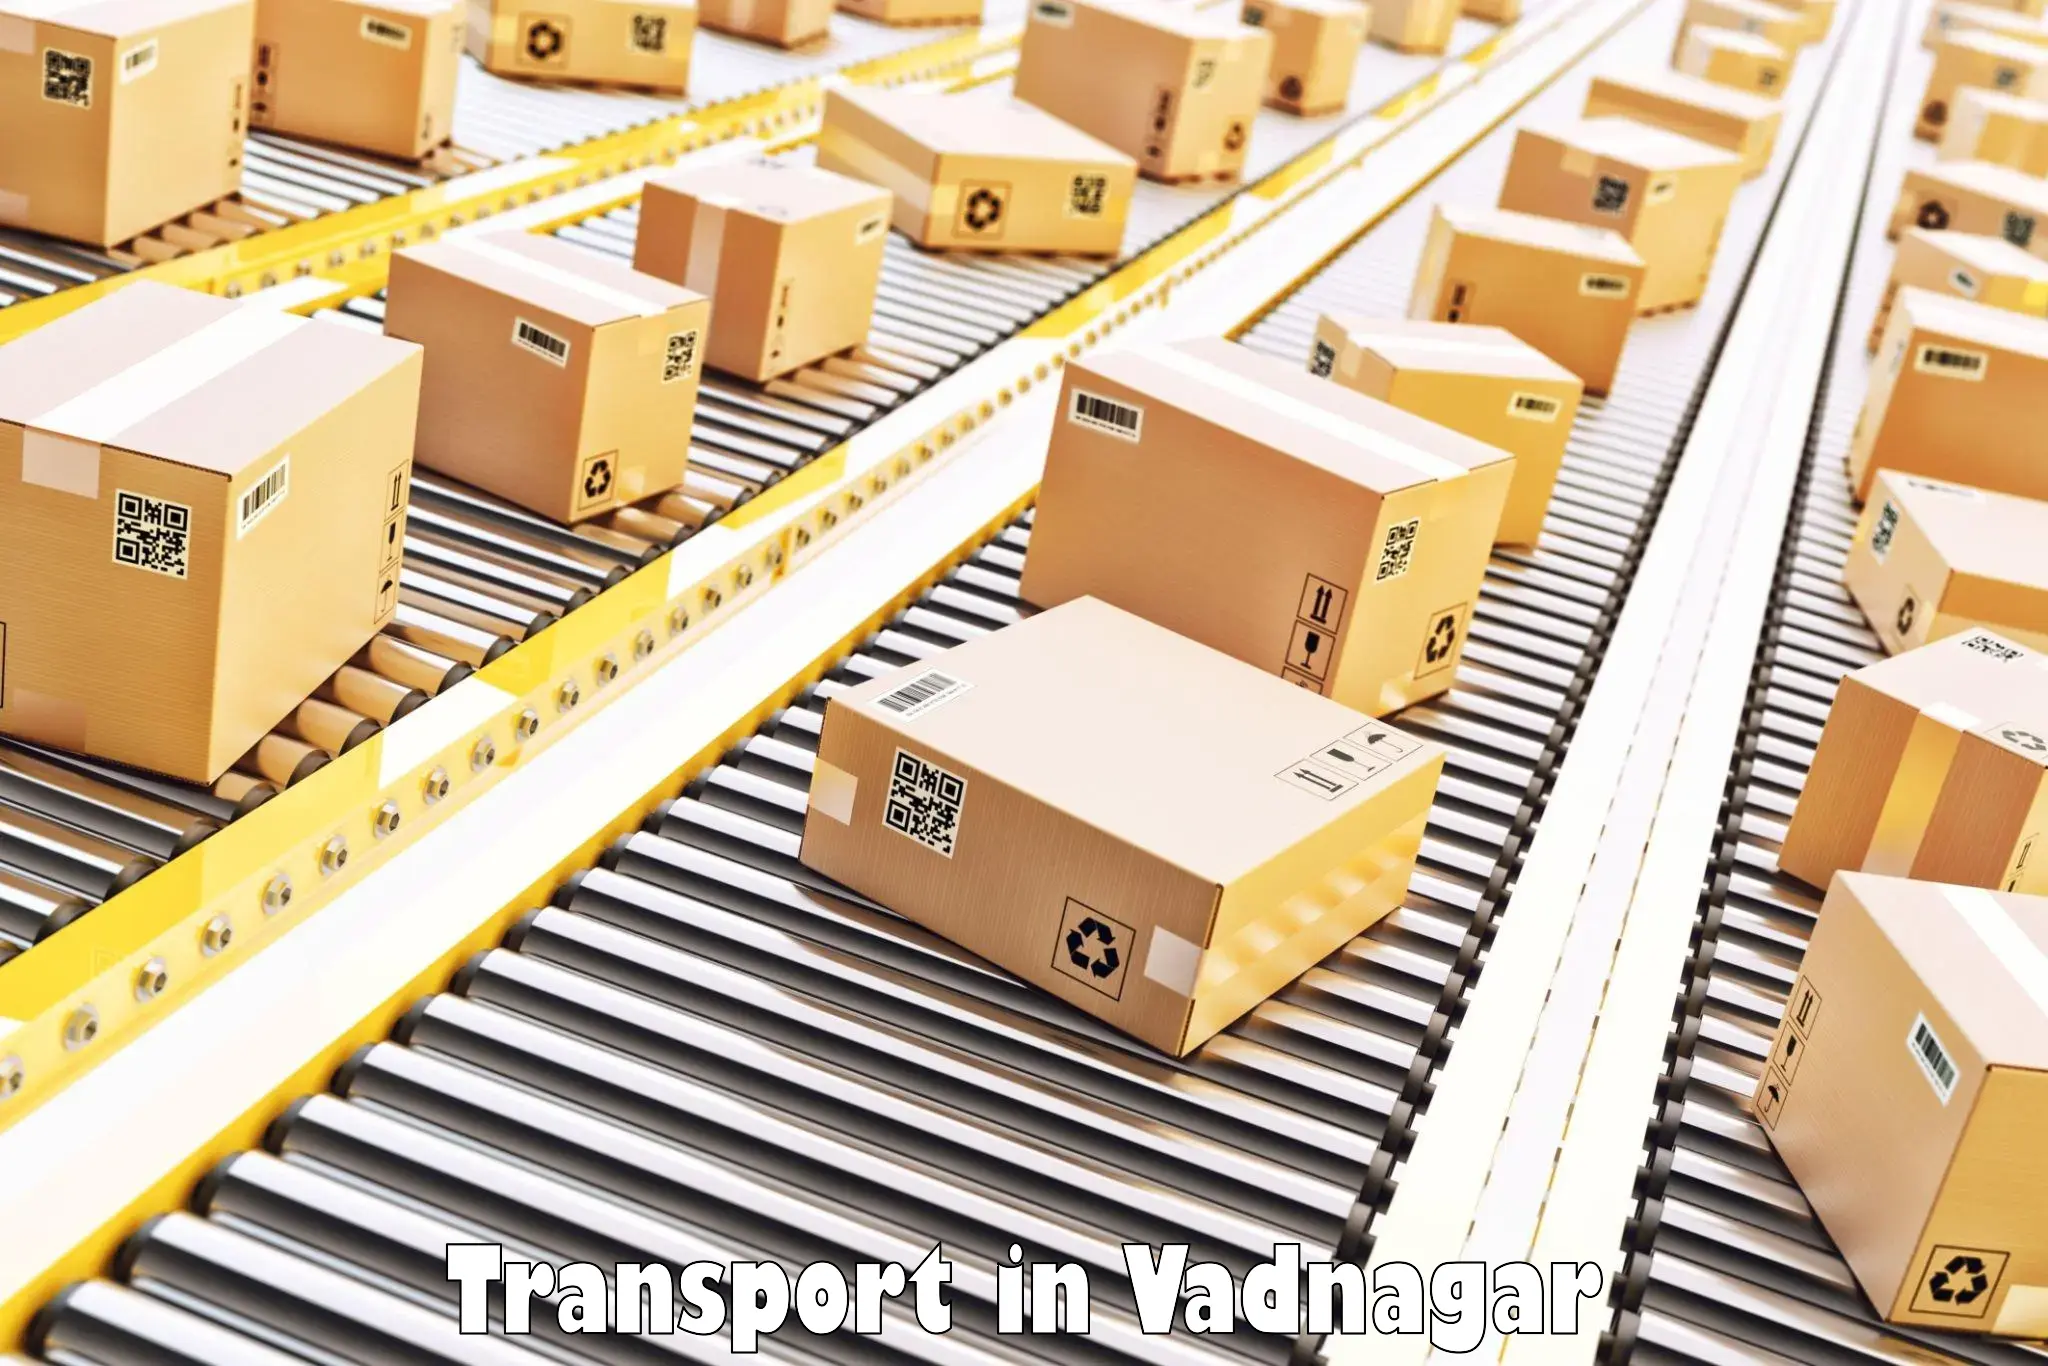 Cargo train transport services in Vadnagar